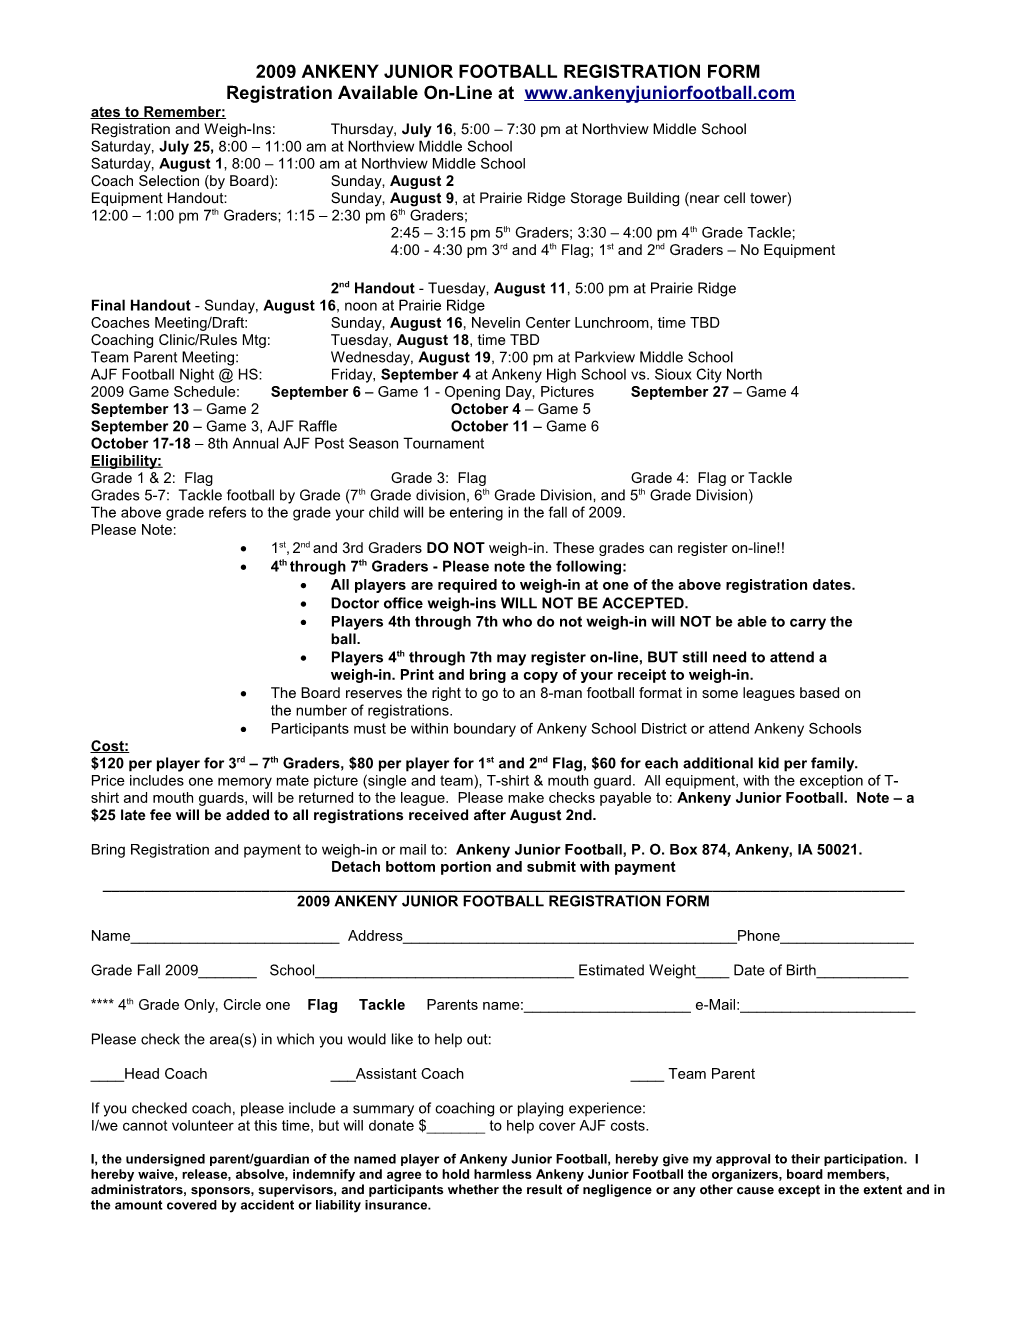 2002 Ankeny Junior Football Registration Form